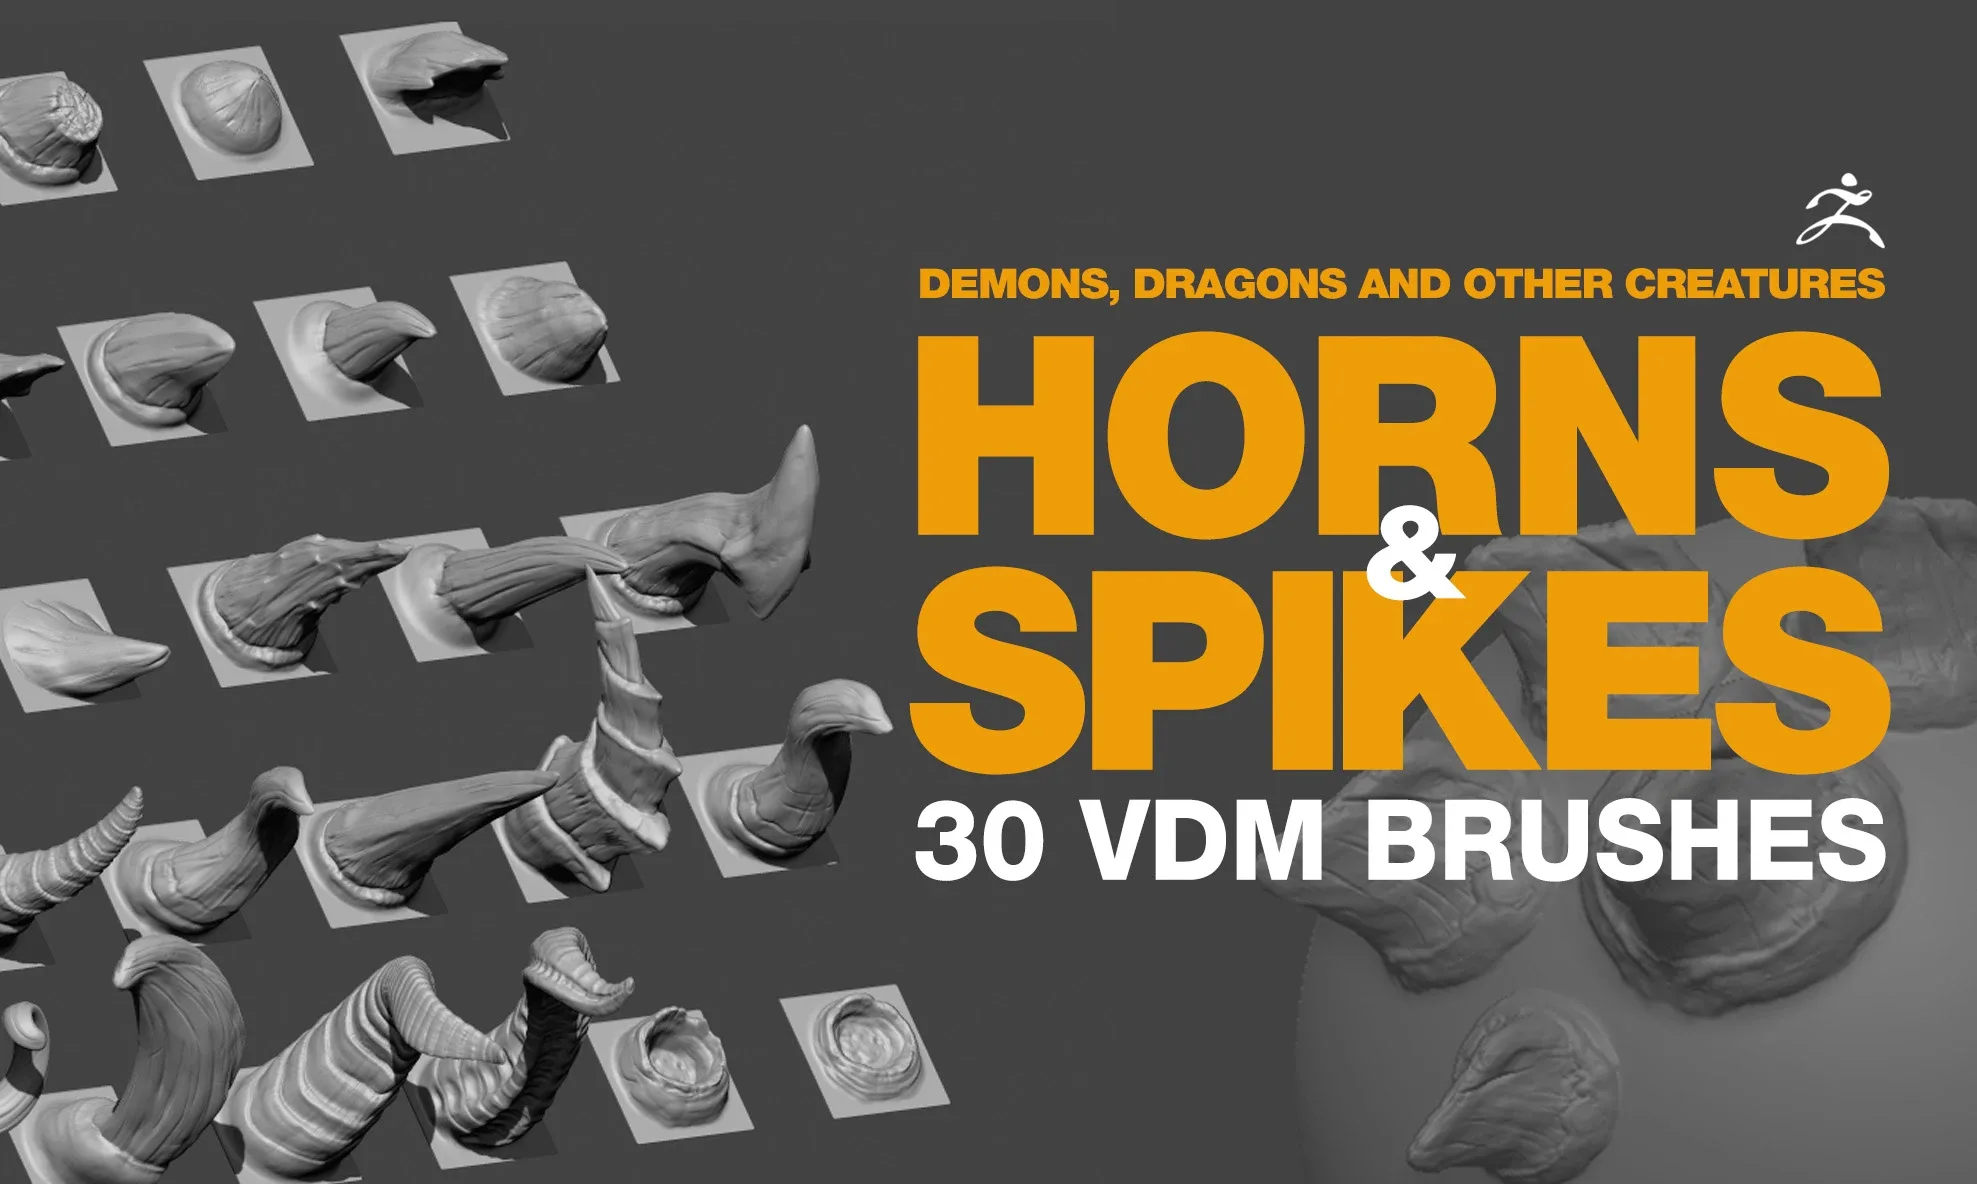 HORNS & SPIKES VDM BRUSHES